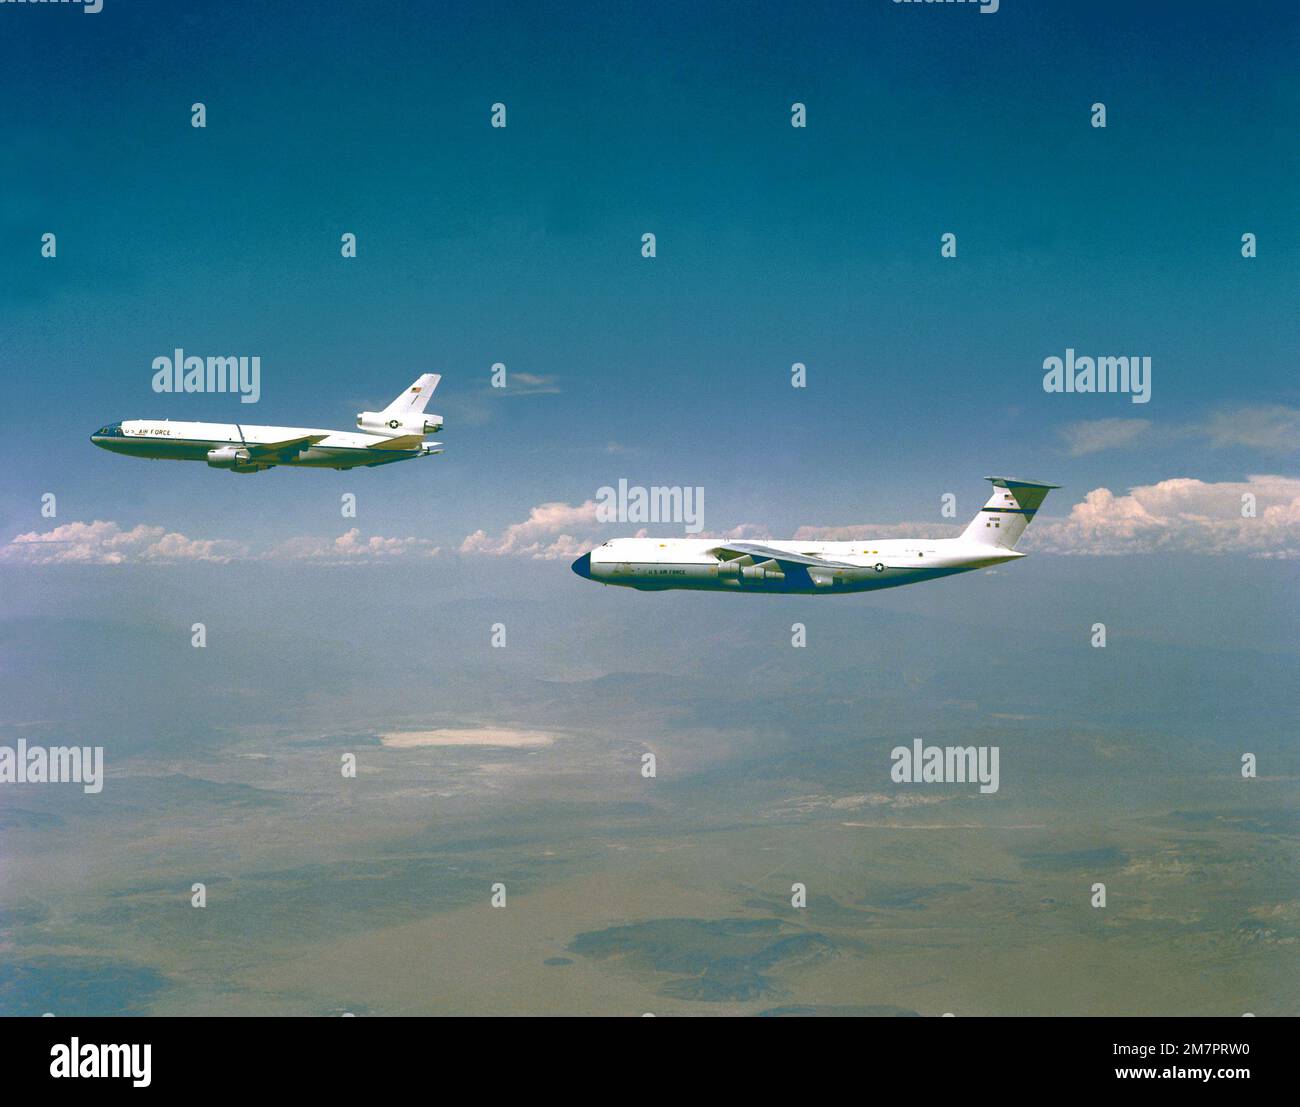 VUE aérienne à gauche d'un avion KC-10 Extender, avant, et d'un avion C-5A Galaxy. Pays : inconnu Banque D'Images